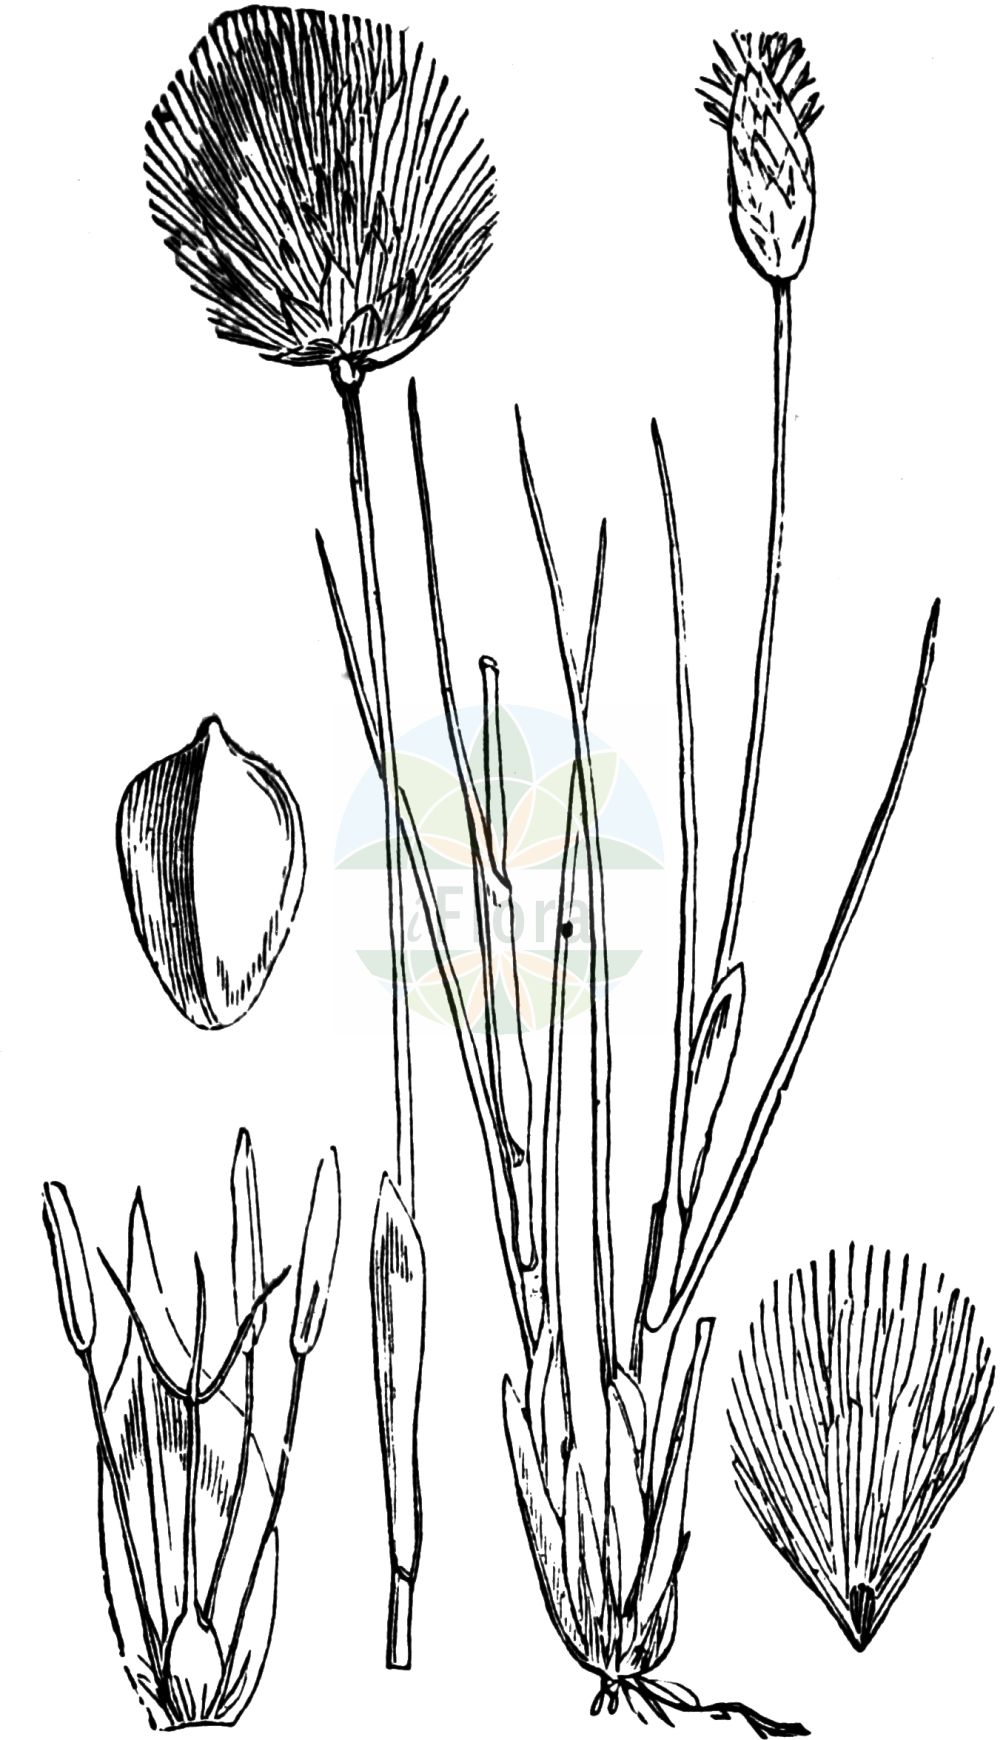 Historische Abbildung von Eriophorum vaginatum (Scheiden-Wollgras - Hare's-tail Cottongrass). Das Bild zeigt Blatt, Bluete, Frucht und Same. ---- Historical Drawing of Eriophorum vaginatum (Scheiden-Wollgras - Hare's-tail Cottongrass). The image is showing leaf, flower, fruit and seed.(Eriophorum vaginatum,Scheiden-Wollgras,Hare's-tail Cottongrass,Eriophorum vaginatum,Scheiden-Wollgras,Moor-Wollgras,Scheidiges Wollgras,Hare's-tail Cottongrass,Harestail,Tussock Cottongrass,Eriophorum,Wollgras,Cottongrass,Cyperaceae,Sauergräser,Sedge family,Blatt,Bluete,Frucht,Same,leaf,flower,fruit,seed,Fitch et al. (1880))